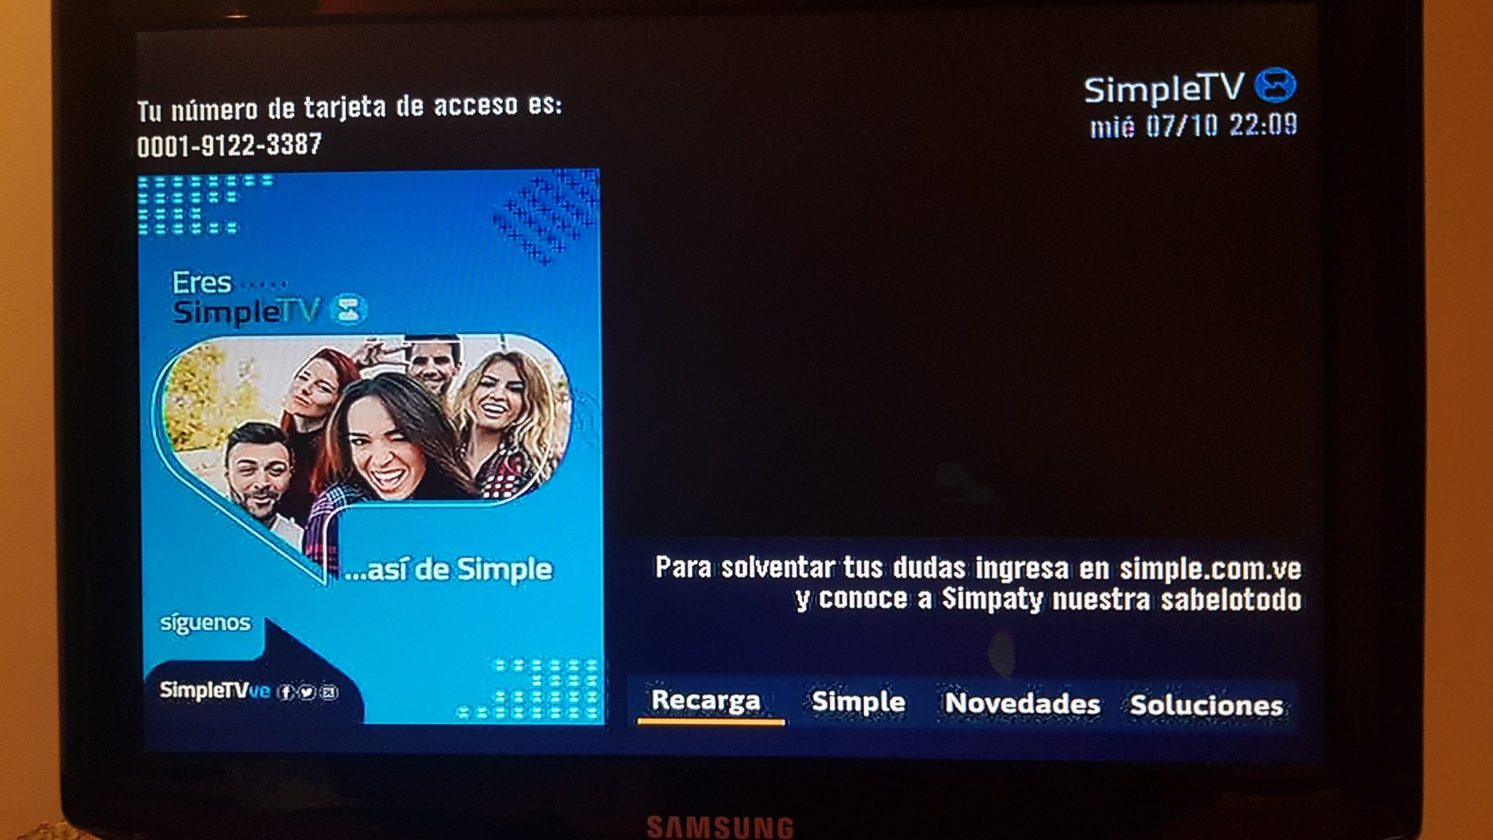 SimpleTV extiende señal gratuita hasta el 15 de diciembre